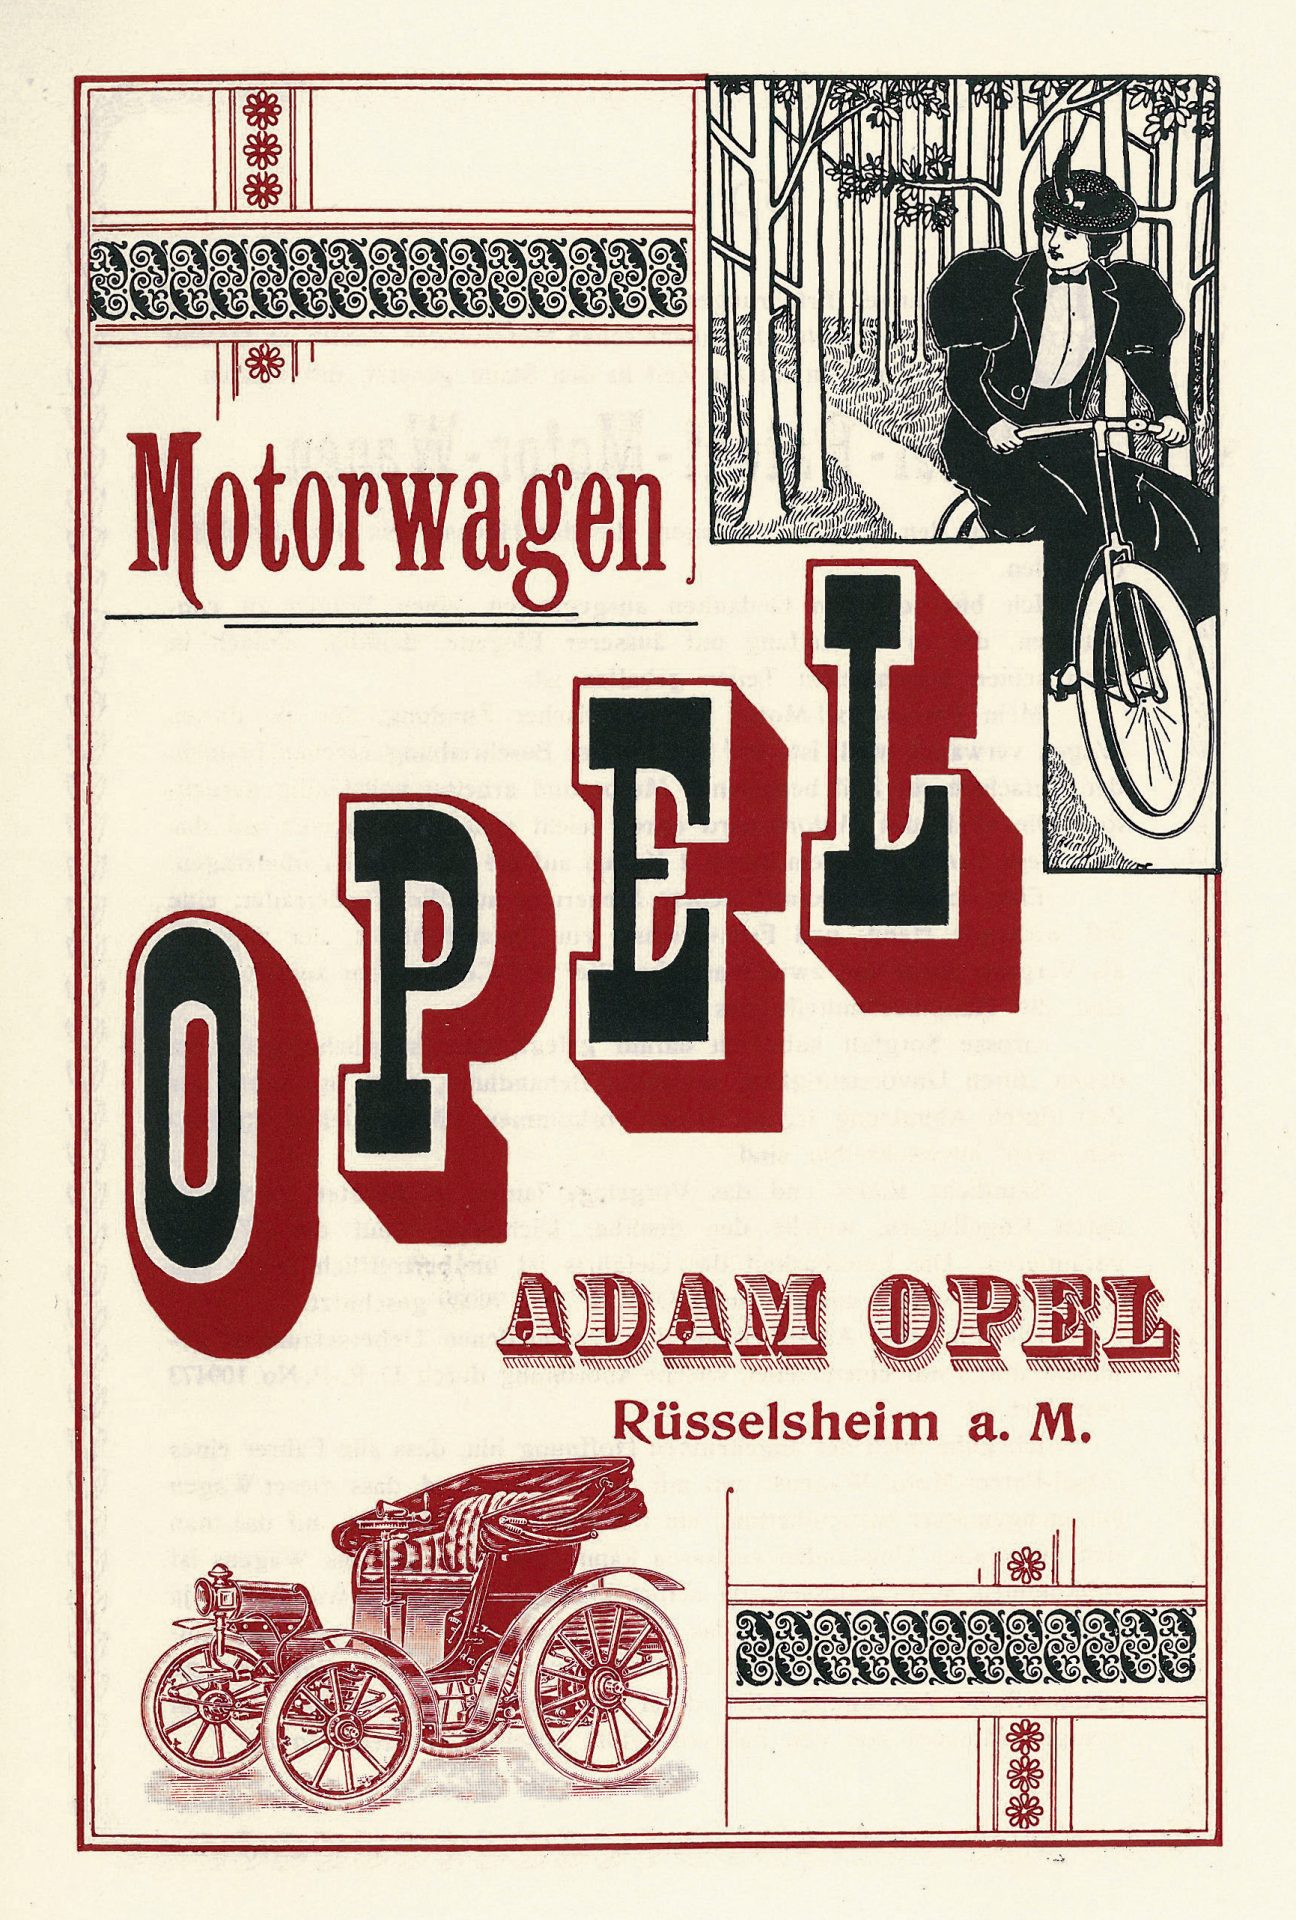 16opel505015 630c6742009b4 630caa97b23c9 Ο Adam Opel Ιδρύει την Εταιρεία του 160 Χρόνια Πριν